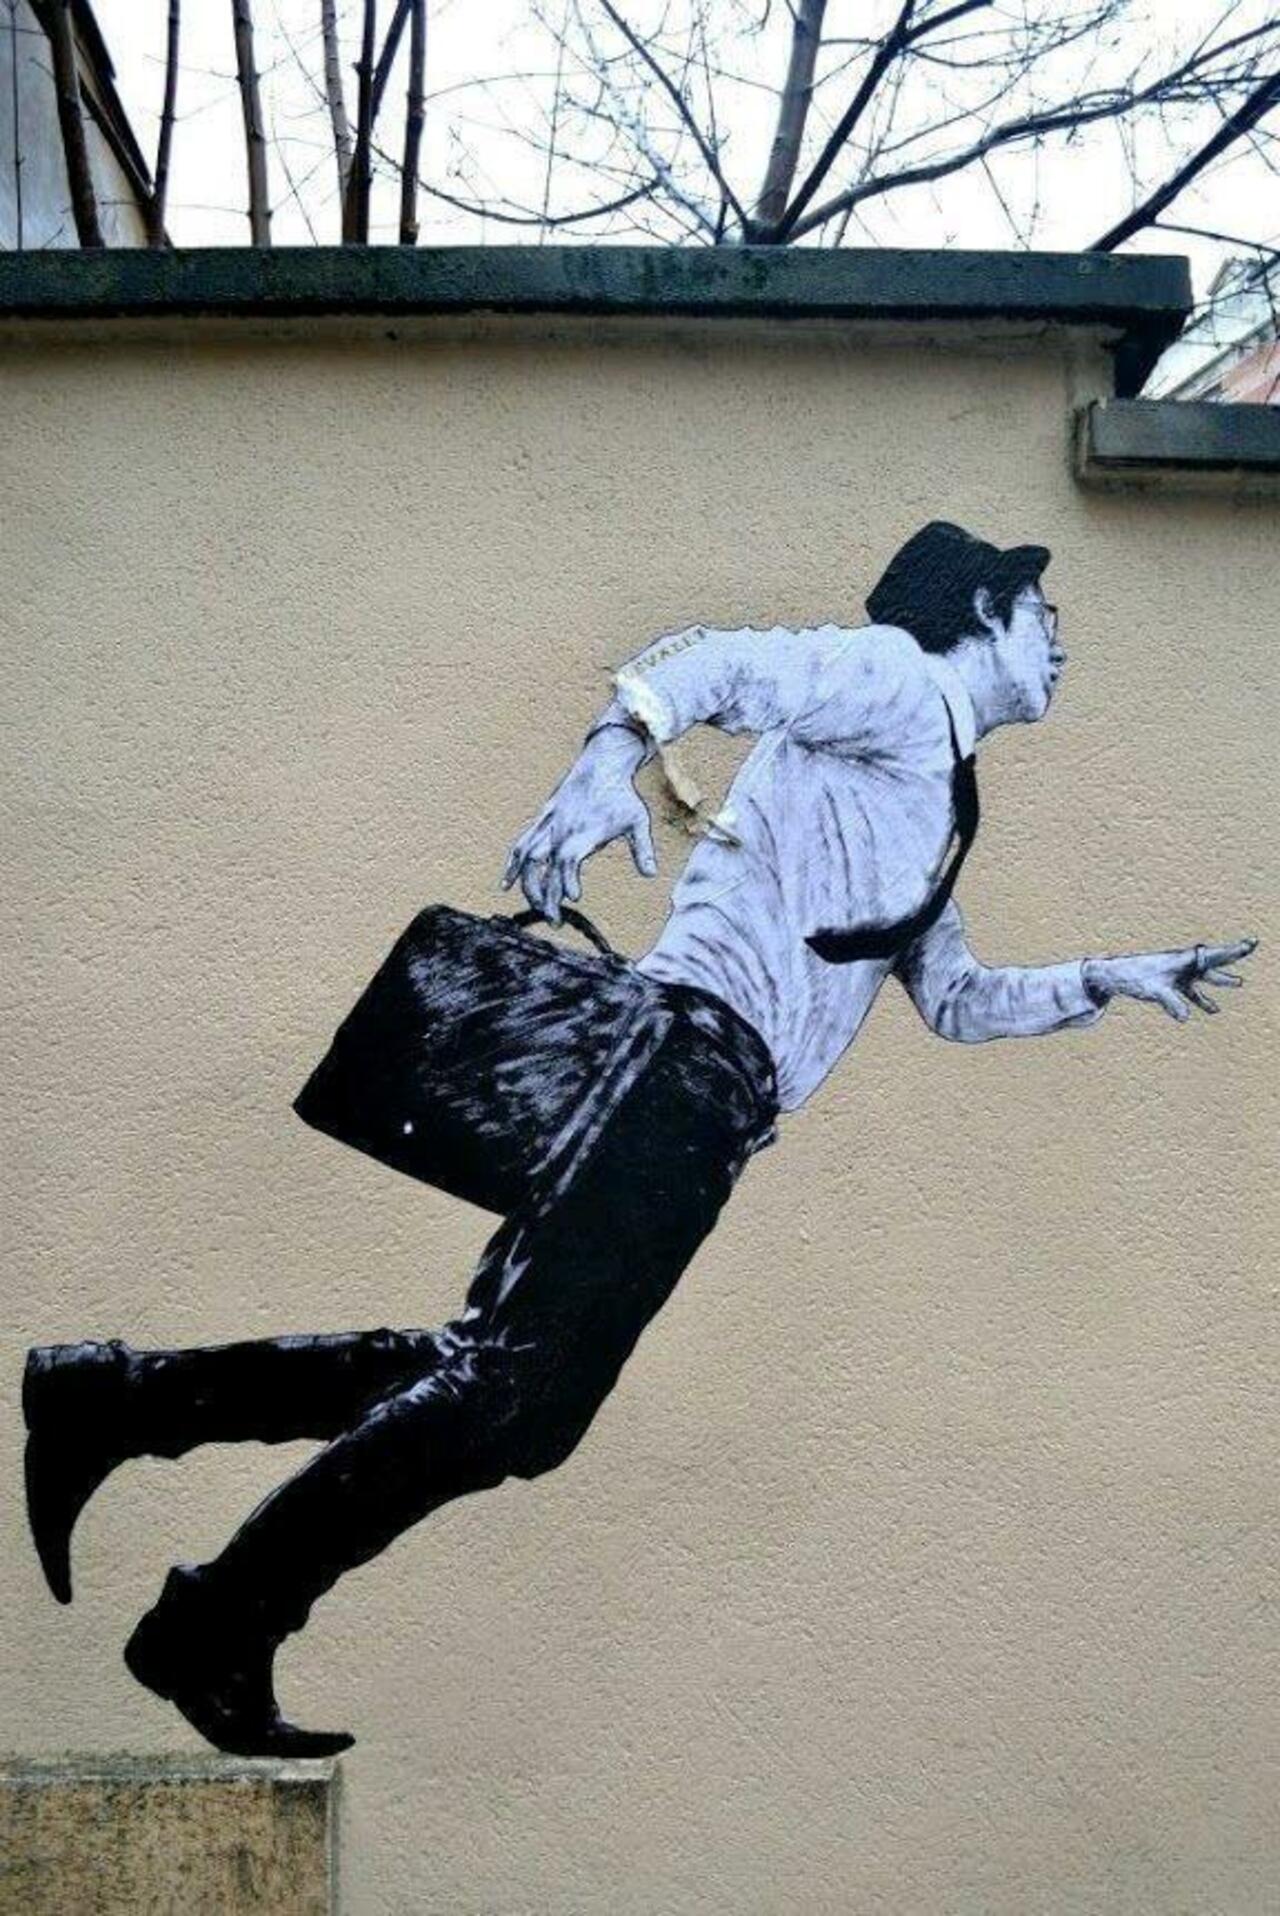 Mind your step #streetart #switch #bedifferent #graffiti #art #art http://t.co/84qjqoA0tk